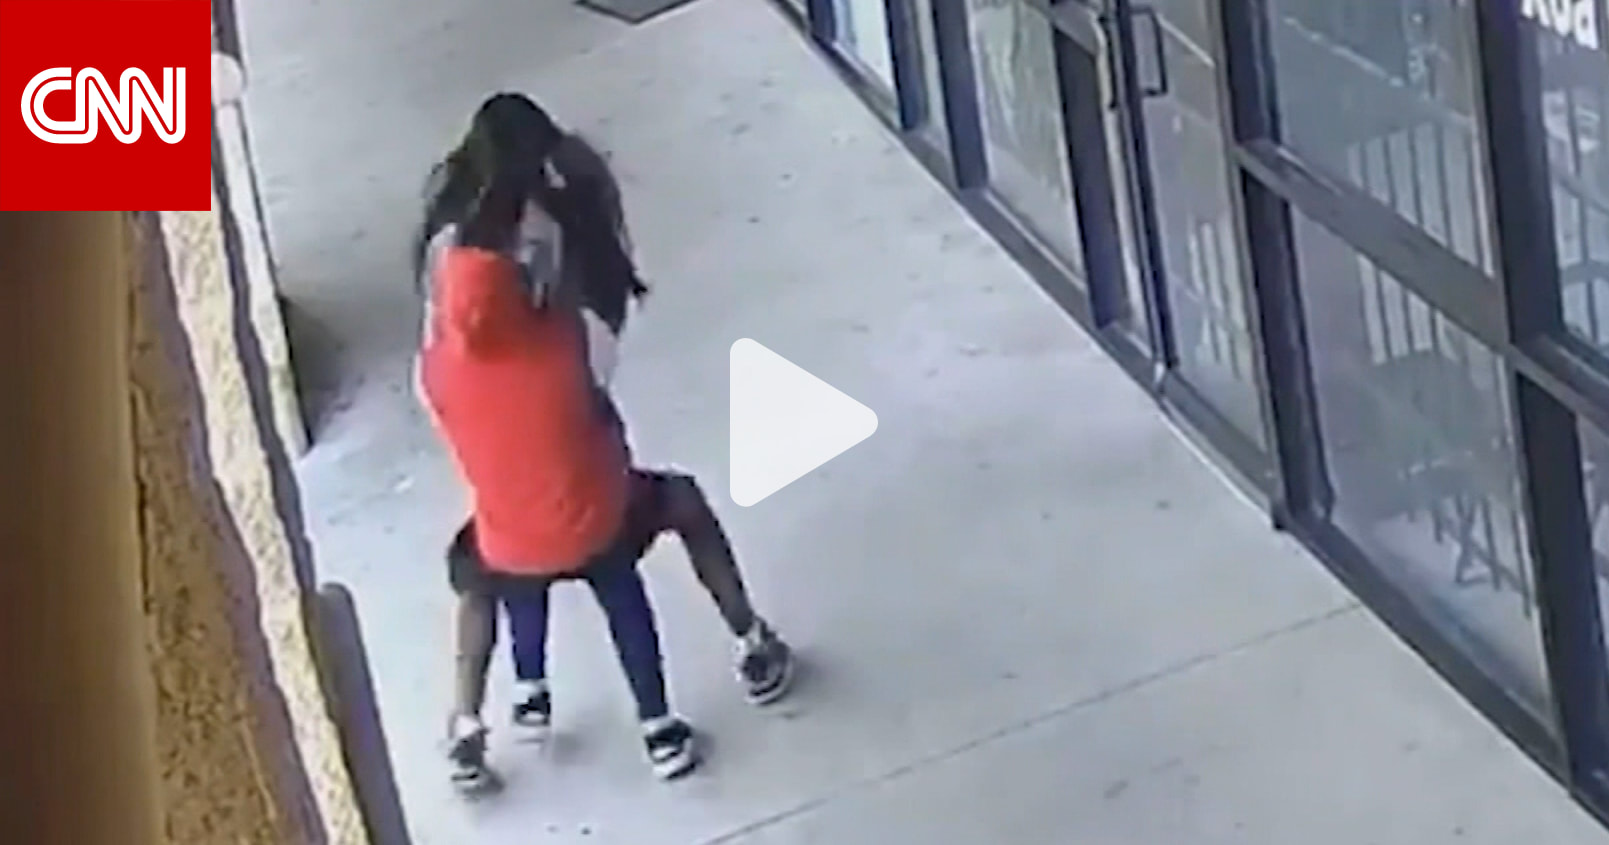 حملها وطرحها أرضًا ثم سرقها.. فيديو يظهر لحظة هجوم شاب على سيدة لسرقتها بأمريكا